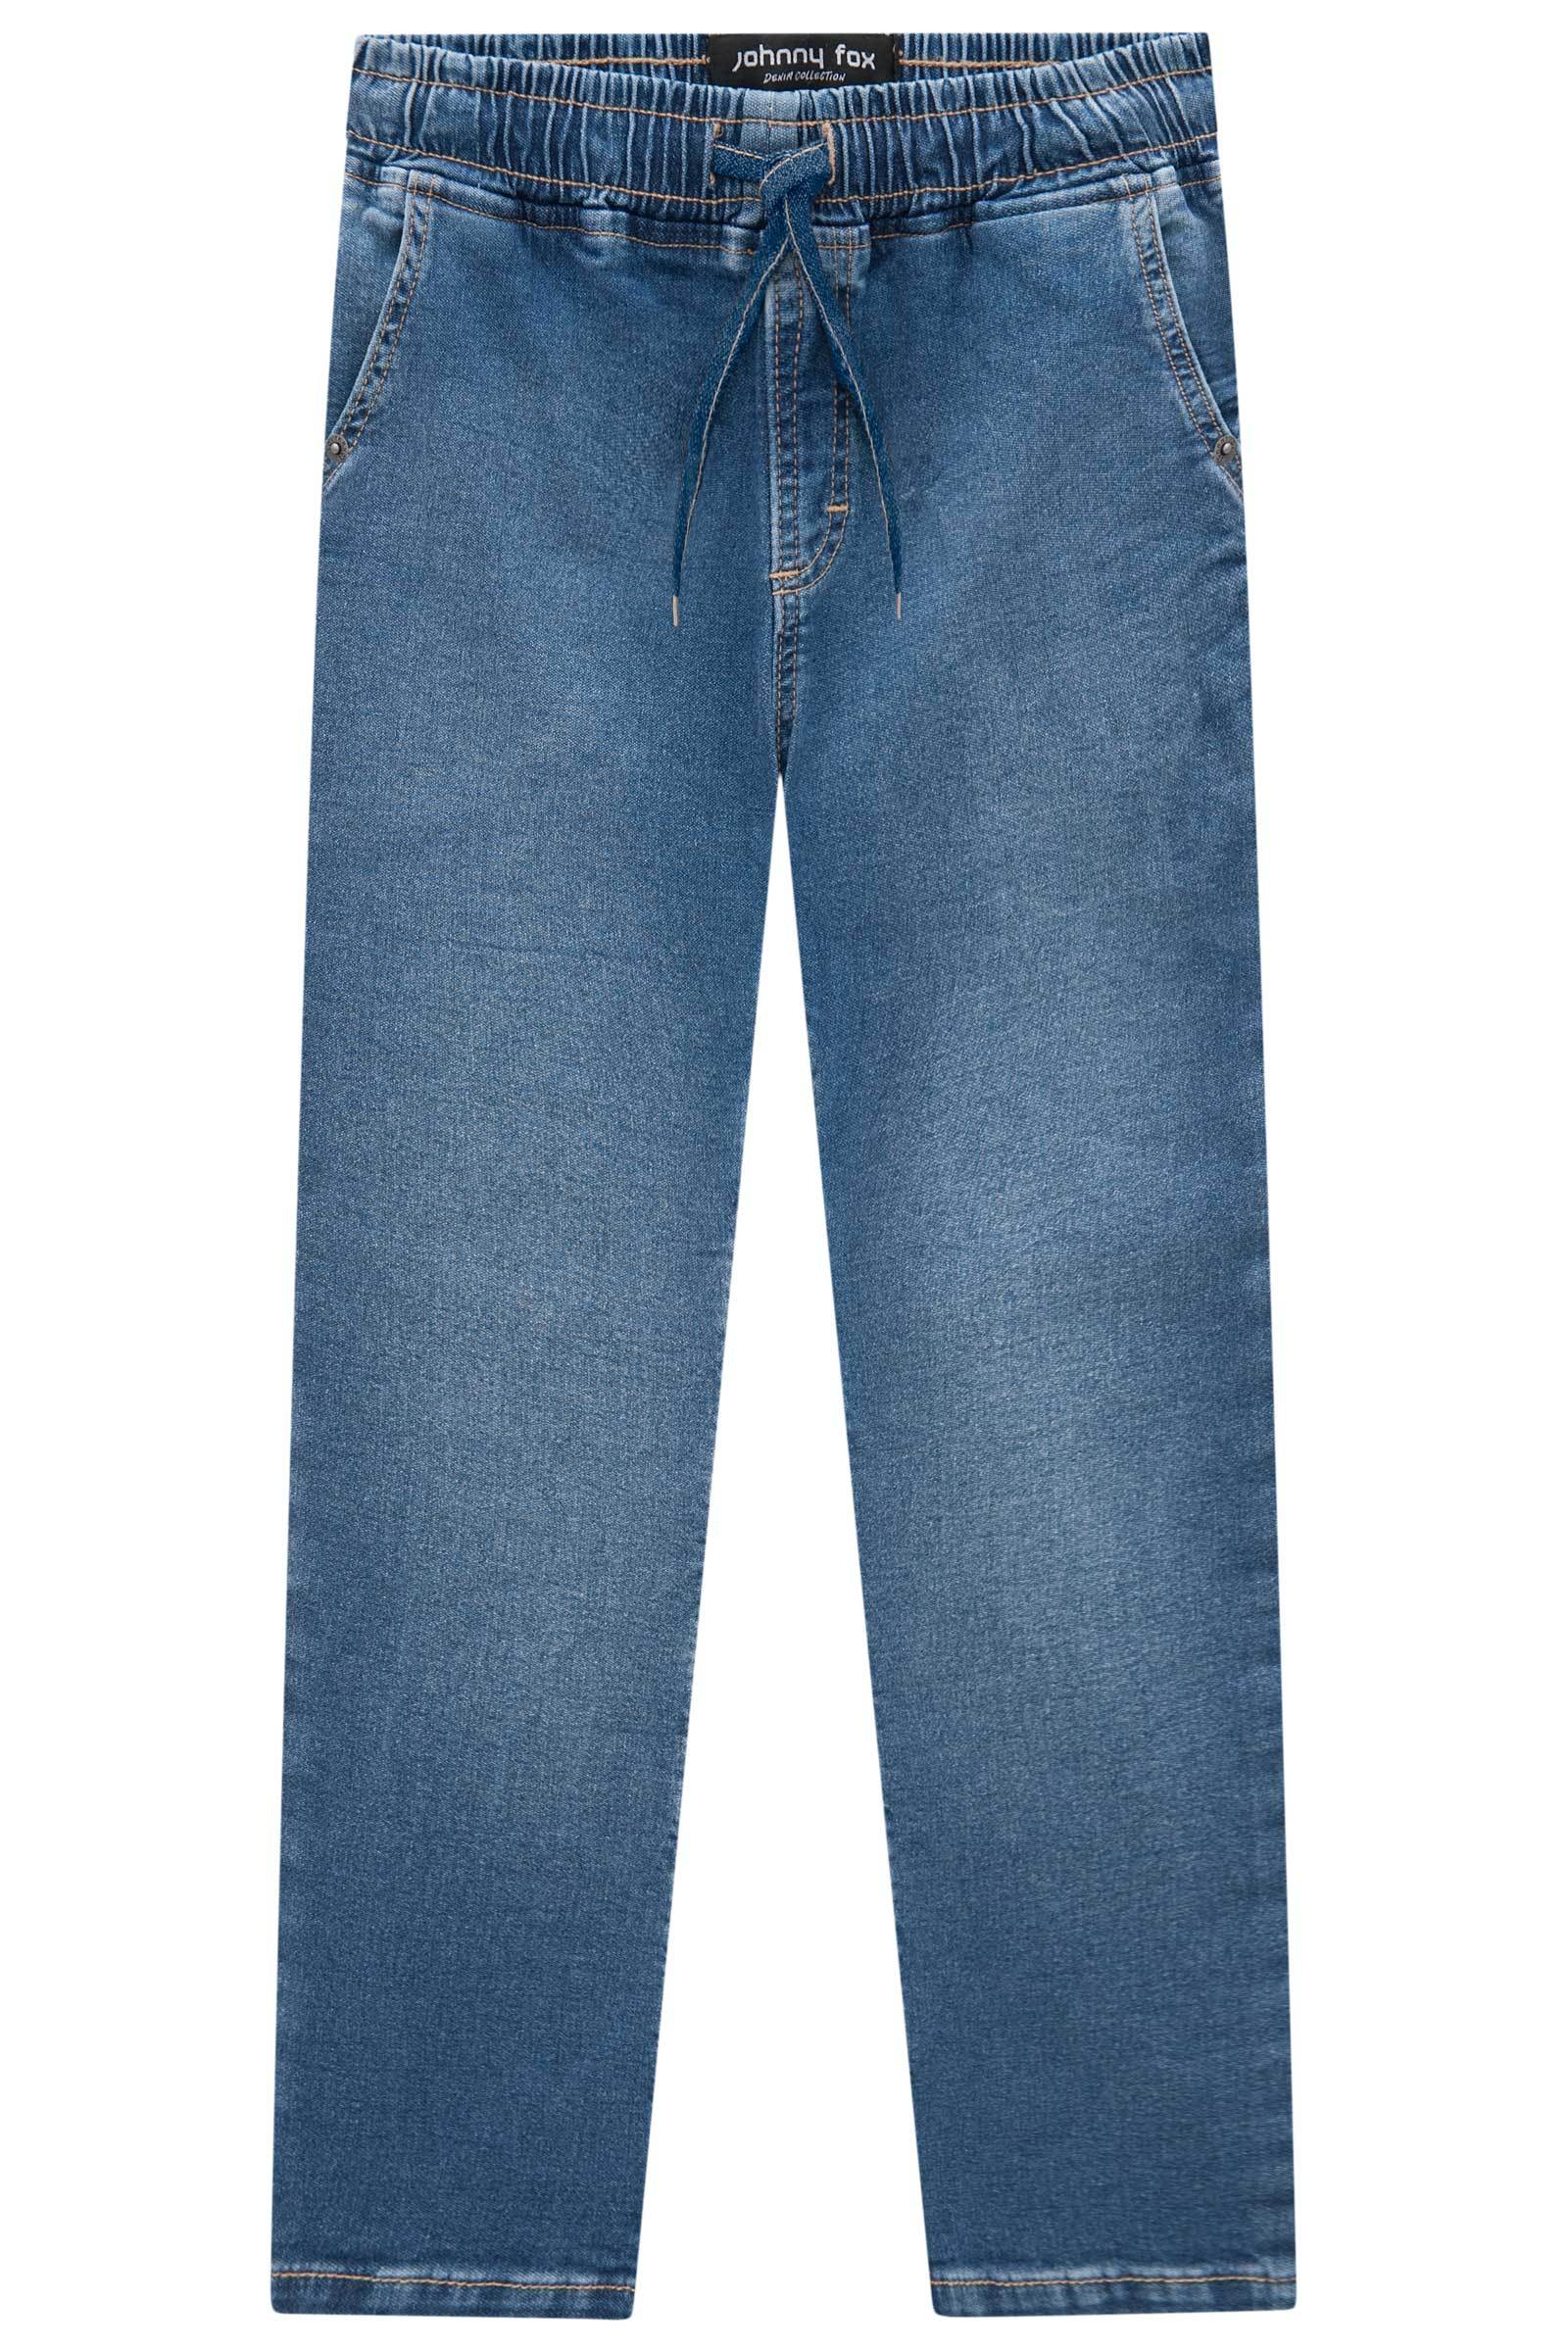 Calça Skinny Comfy em Malha Jeans Trek com Elastano 70782 Johnny Fox